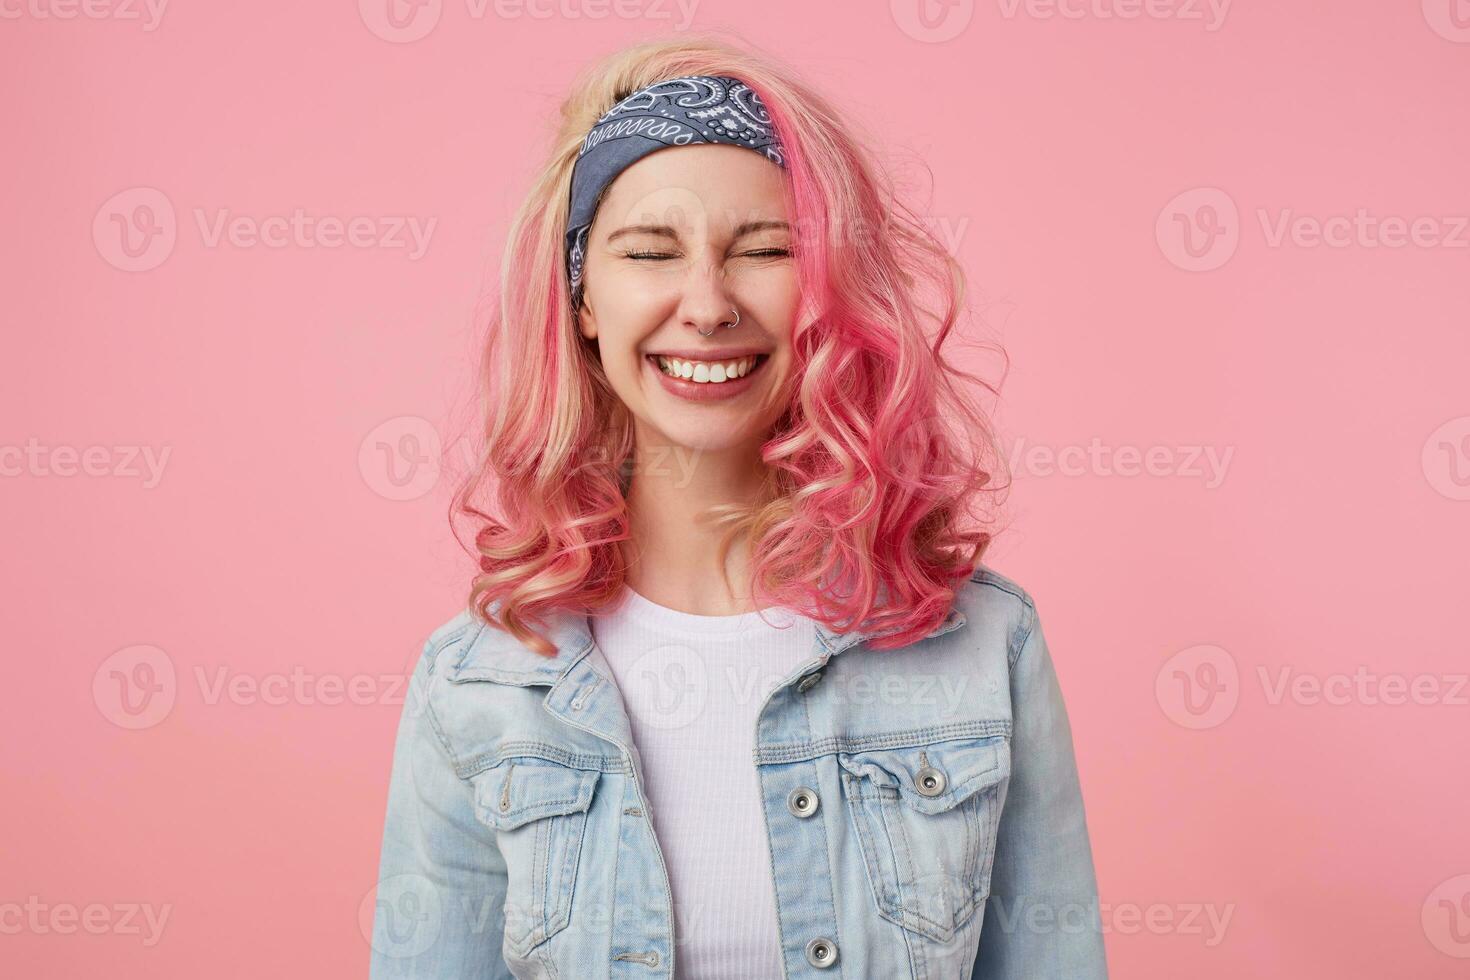 contento linda sonriente dama con rosado pelo y tatuado manos, esperando para sorpresa con cerrado ojos, en general sonriente, en pie terminado rosado fondo, vistiendo un blanco camiseta y mezclilla chaqueta. foto